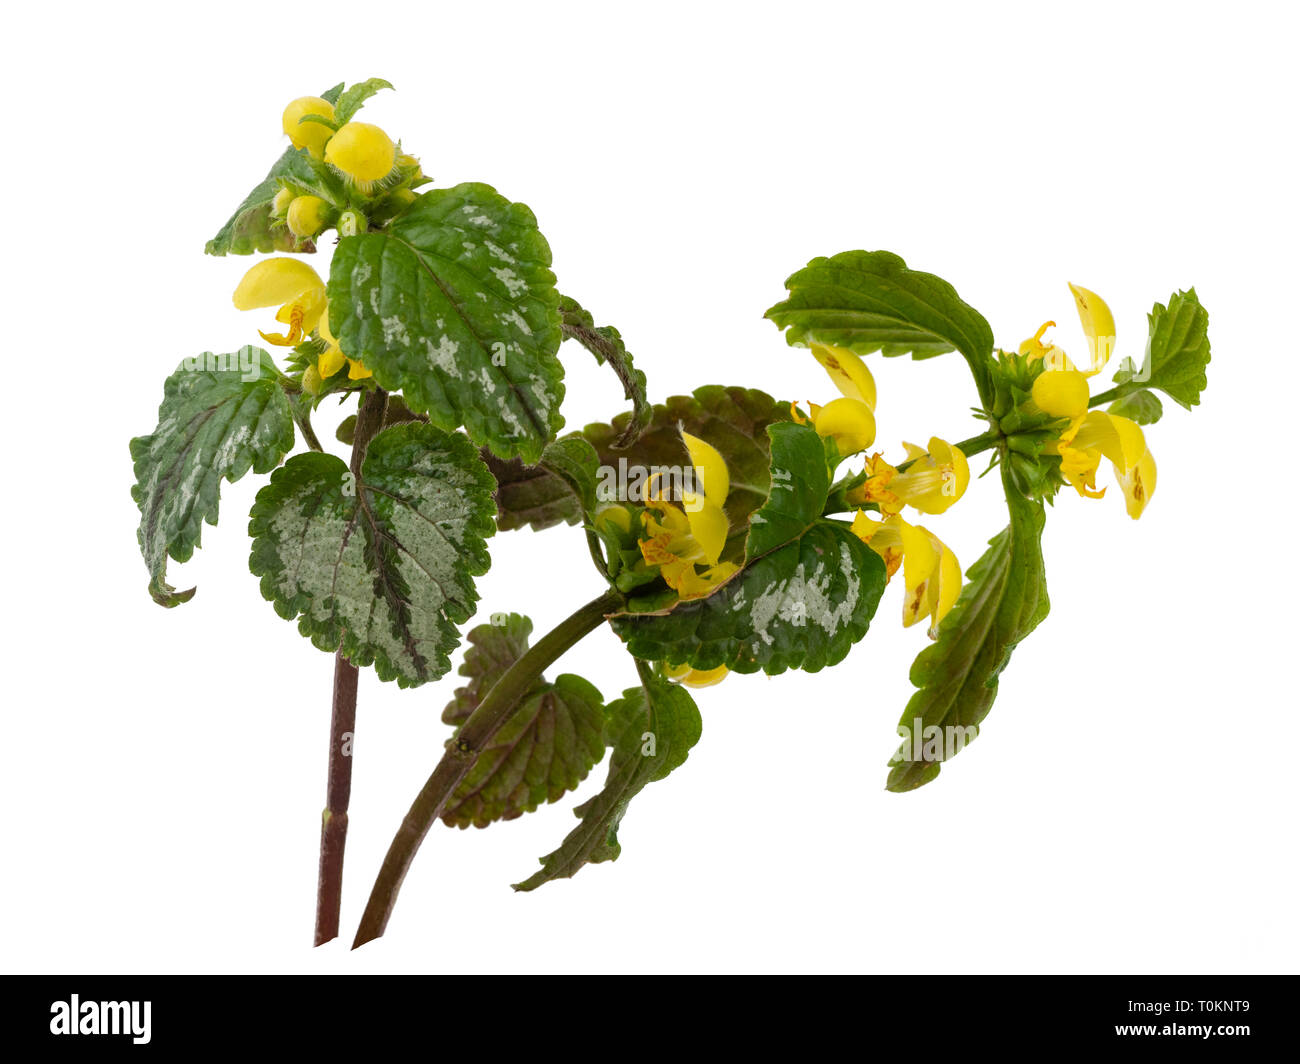 Feuillage panaché jaune et fleurs de printemps du jardin, plantes envahissantes Lamiastrum galeobdolon subsp argentatum, isolé sur fond blanc Banque D'Images